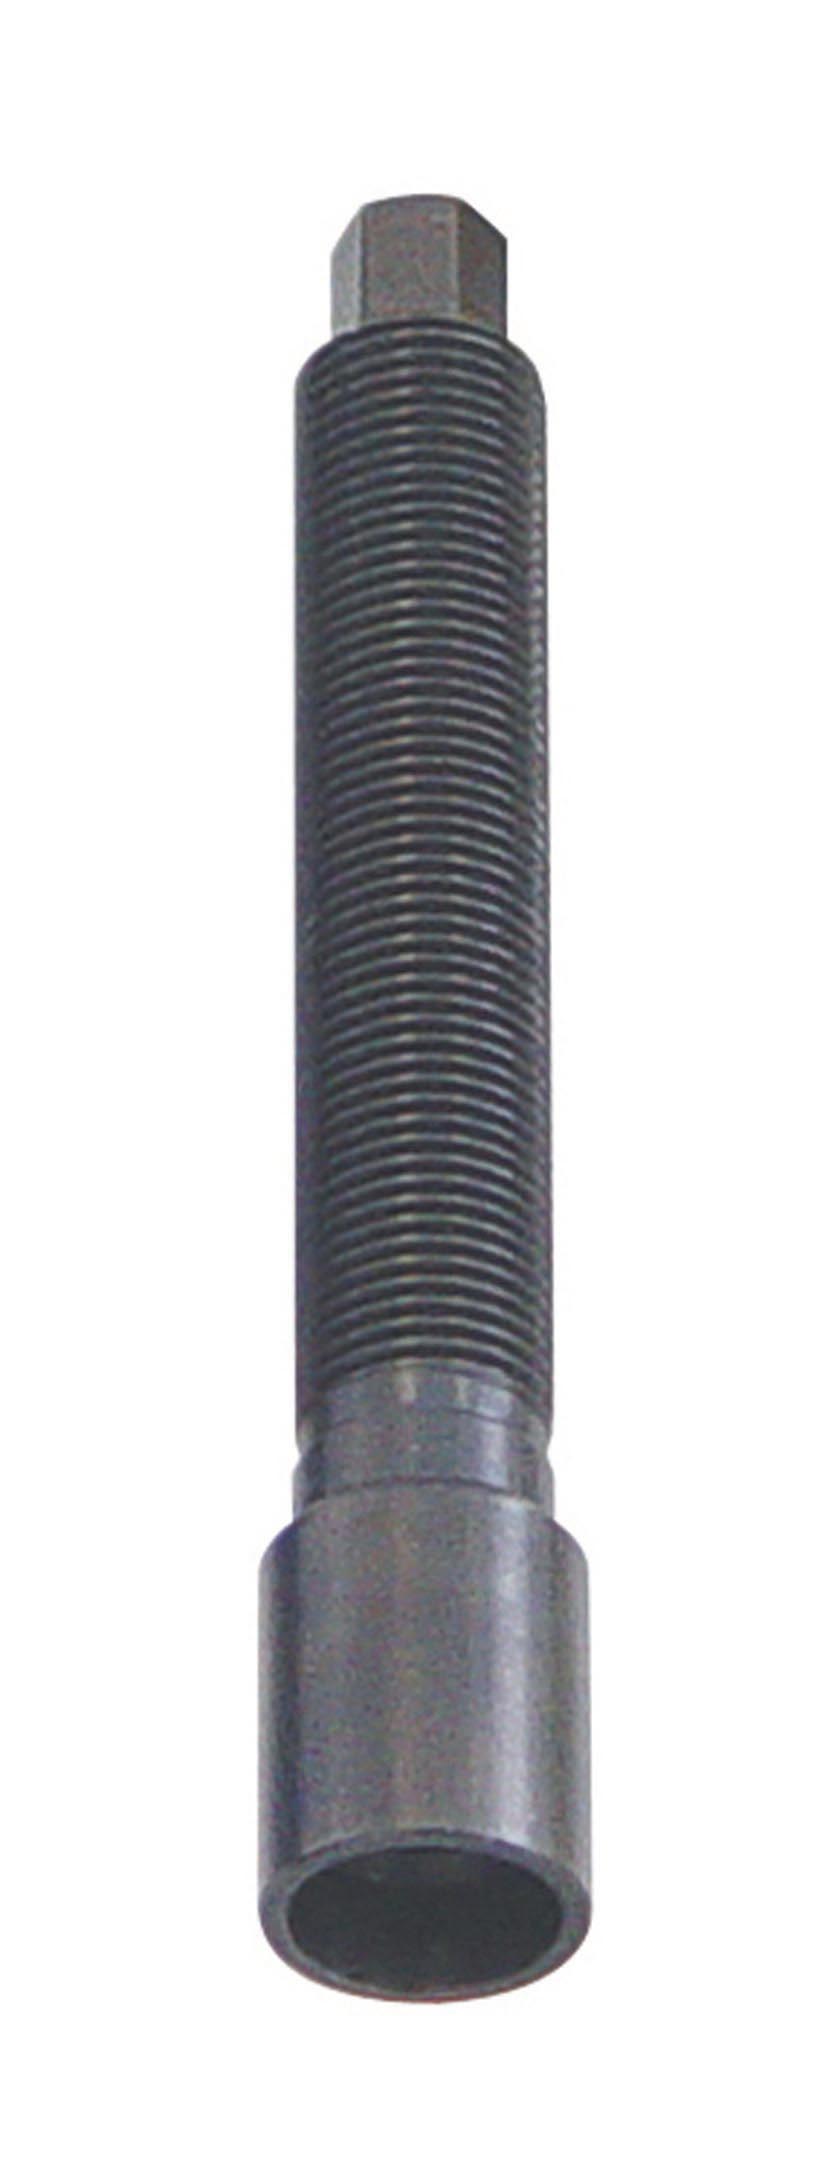 Dragspindel M14x1,5